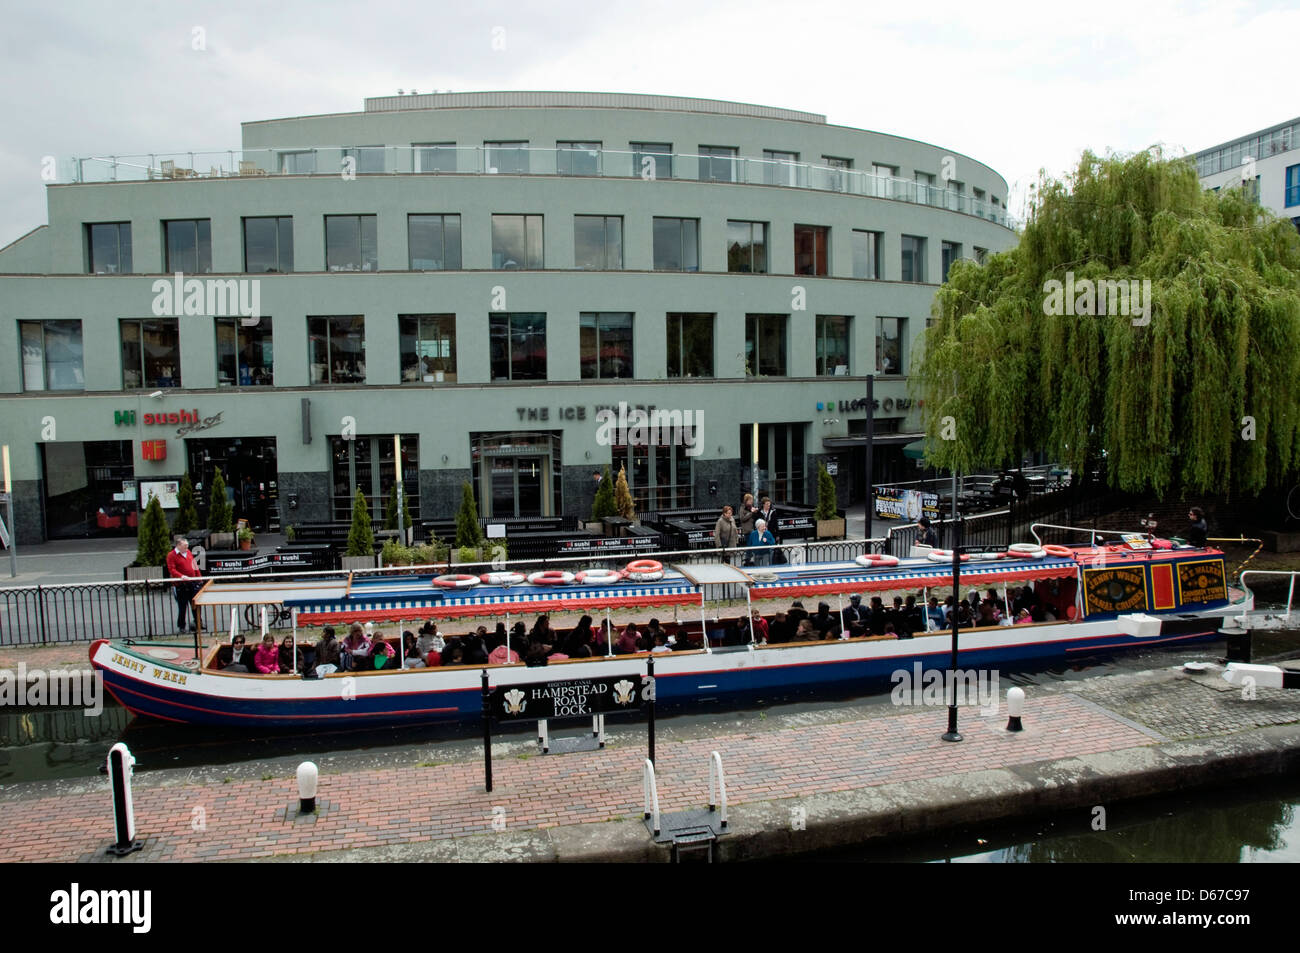 Jenny Wren étroit canal boat à Hampstead Road Lock 1 ou Camden Lock, Regent's Canal avec Ice Wharf derrière Londres Angleterre Royaume-uni Banque D'Images